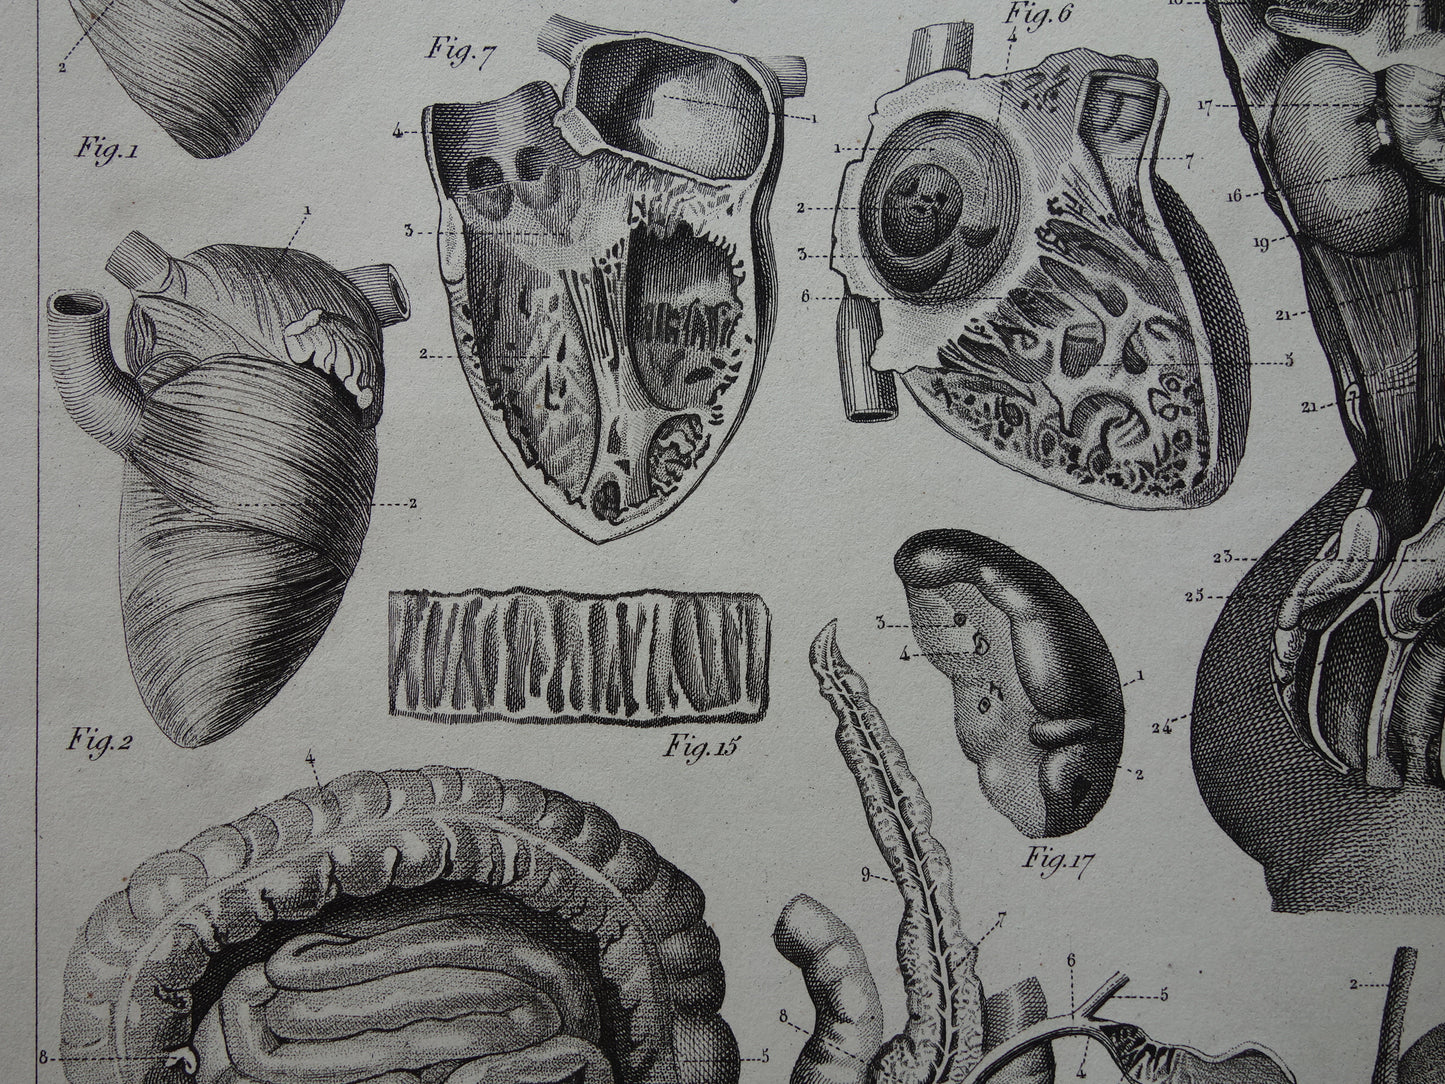 Splanchnologie Oude Anatomie Prent Ingewanden Organen van de Mens Originele 170+ jaar oude Illustratie Hart Darmkanaal Vintage Anatomische Prenten